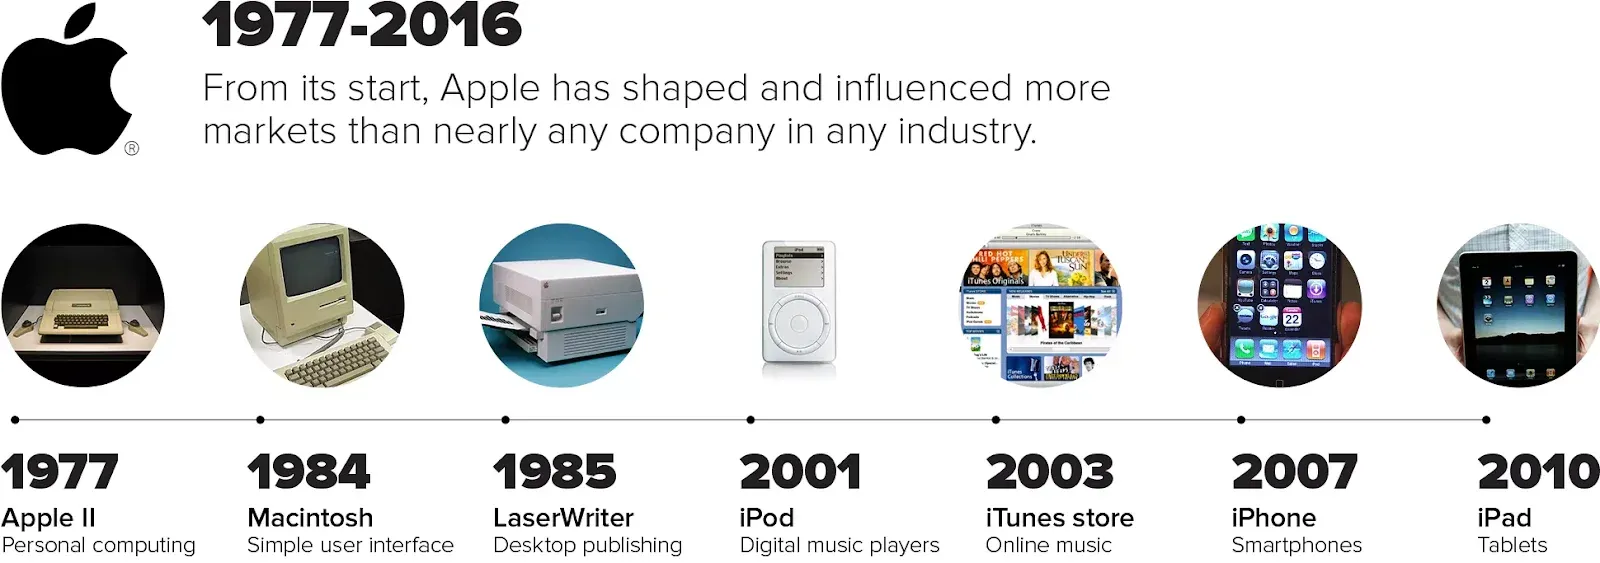 Garis waktu inovasi Apple | Sumber: cnet.com